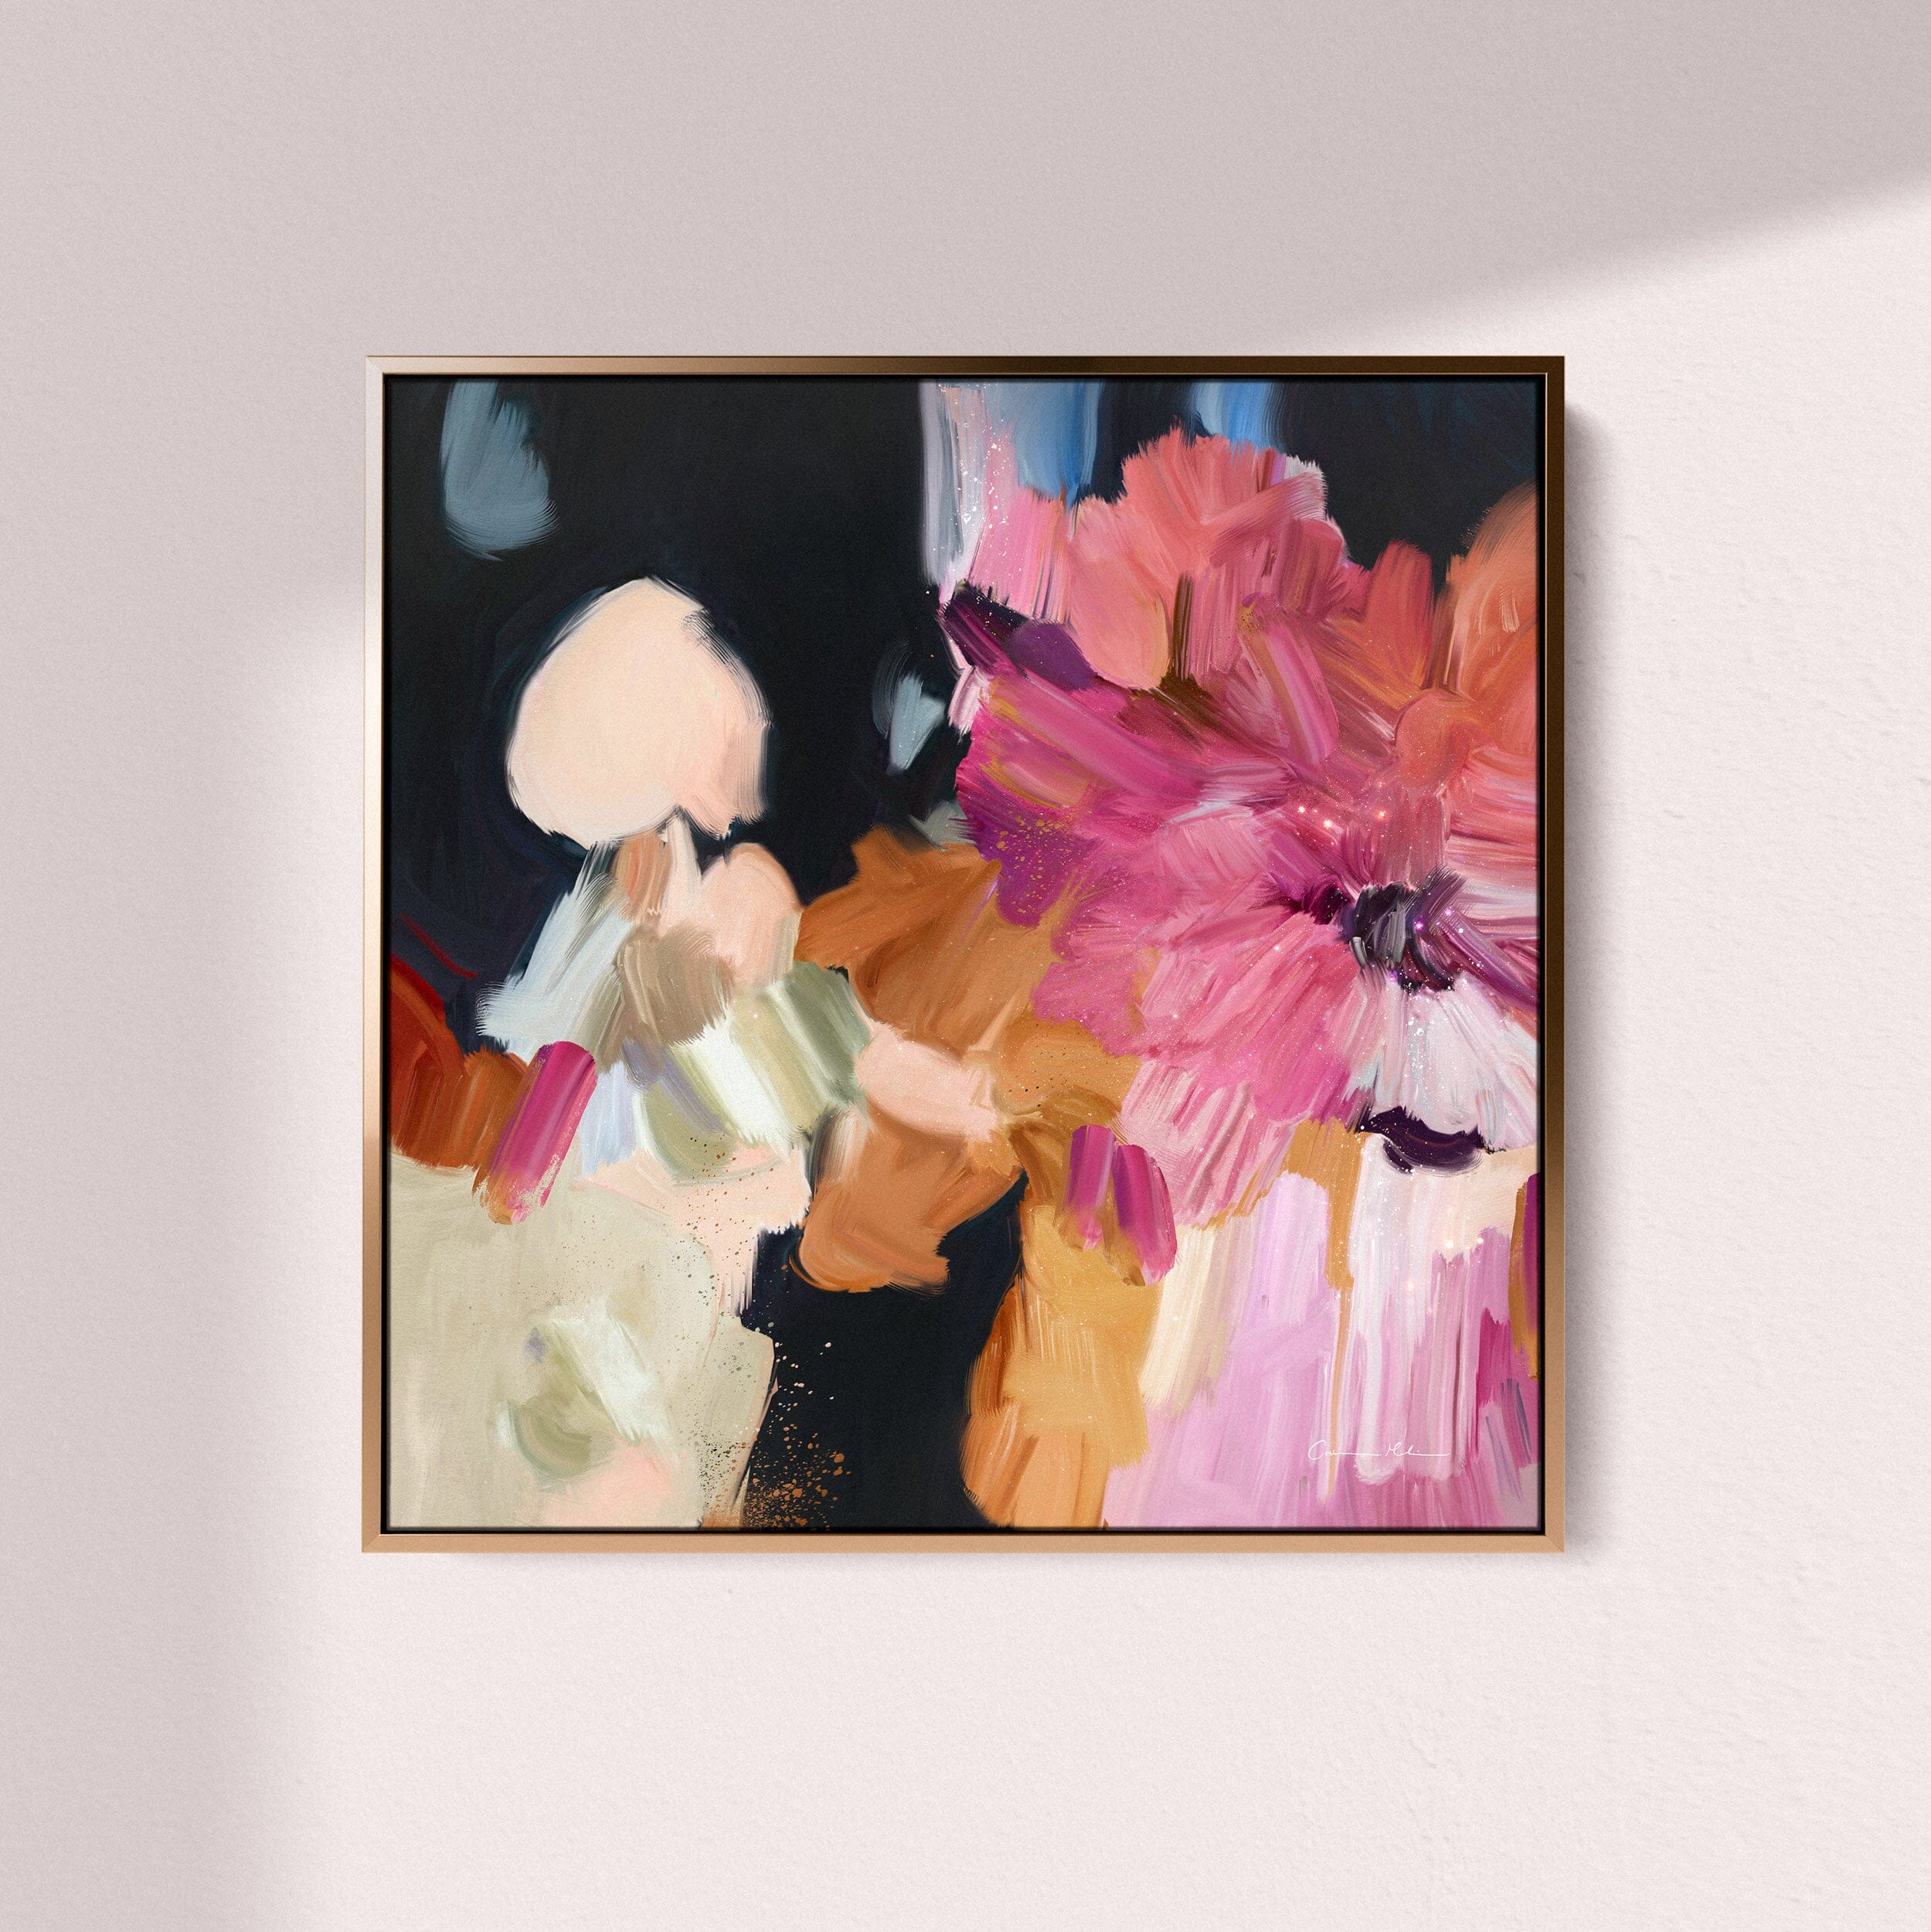 "Clara Auri No. 4" on Canvas Canvas Wall Art Corinne Melanie Professionally Framed - Gold 20x20in / 50x50cm 